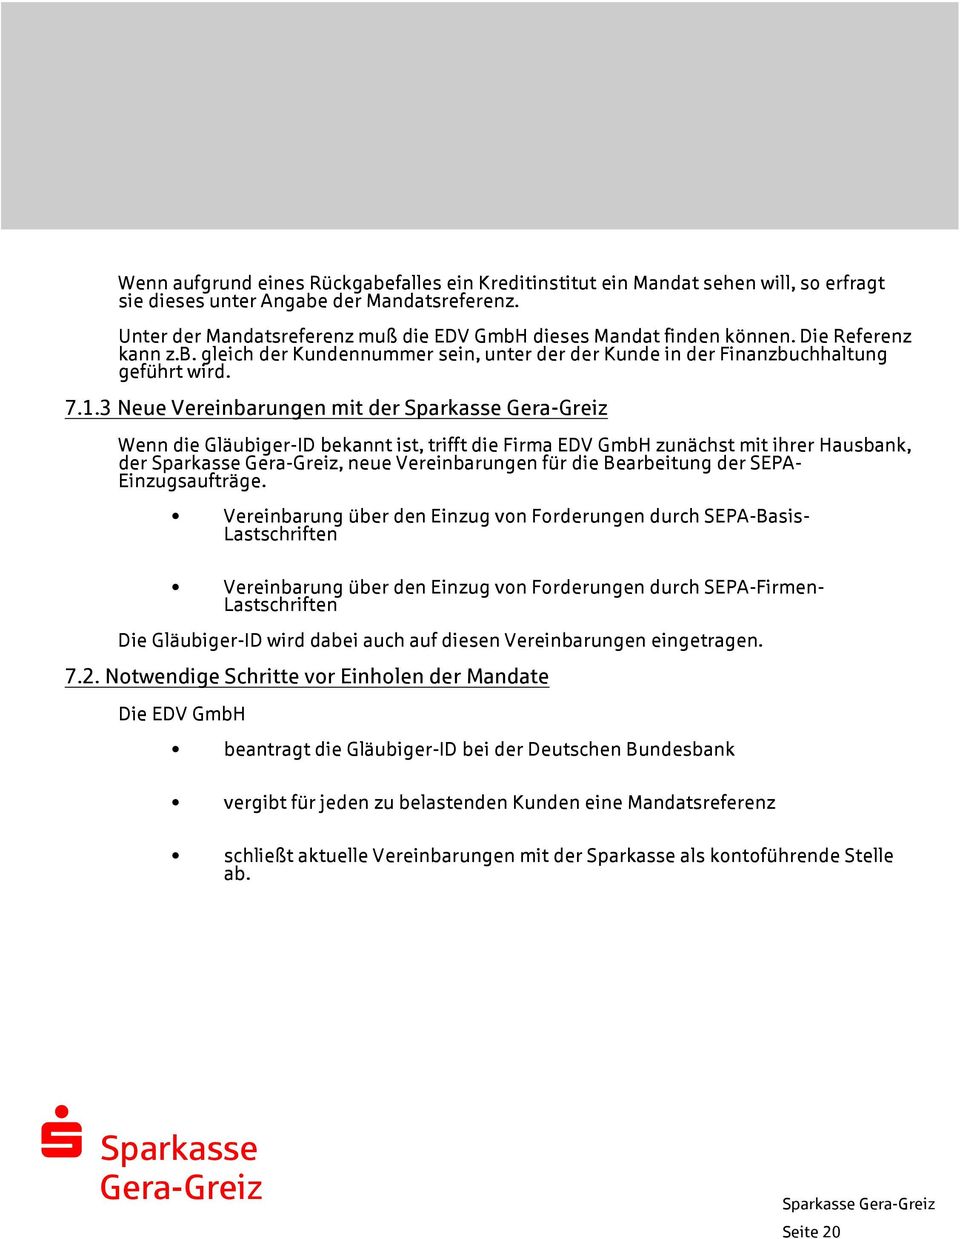 3 Neue Vereinbarungen mit der Wenn die Gläubiger-ID bekannt ist, trifft die Firma EDV GmbH zunächst mit ihrer Hausbank, der, neue Vereinbarungen für die Bearbeitung der SEPA- Einzugsaufträge.